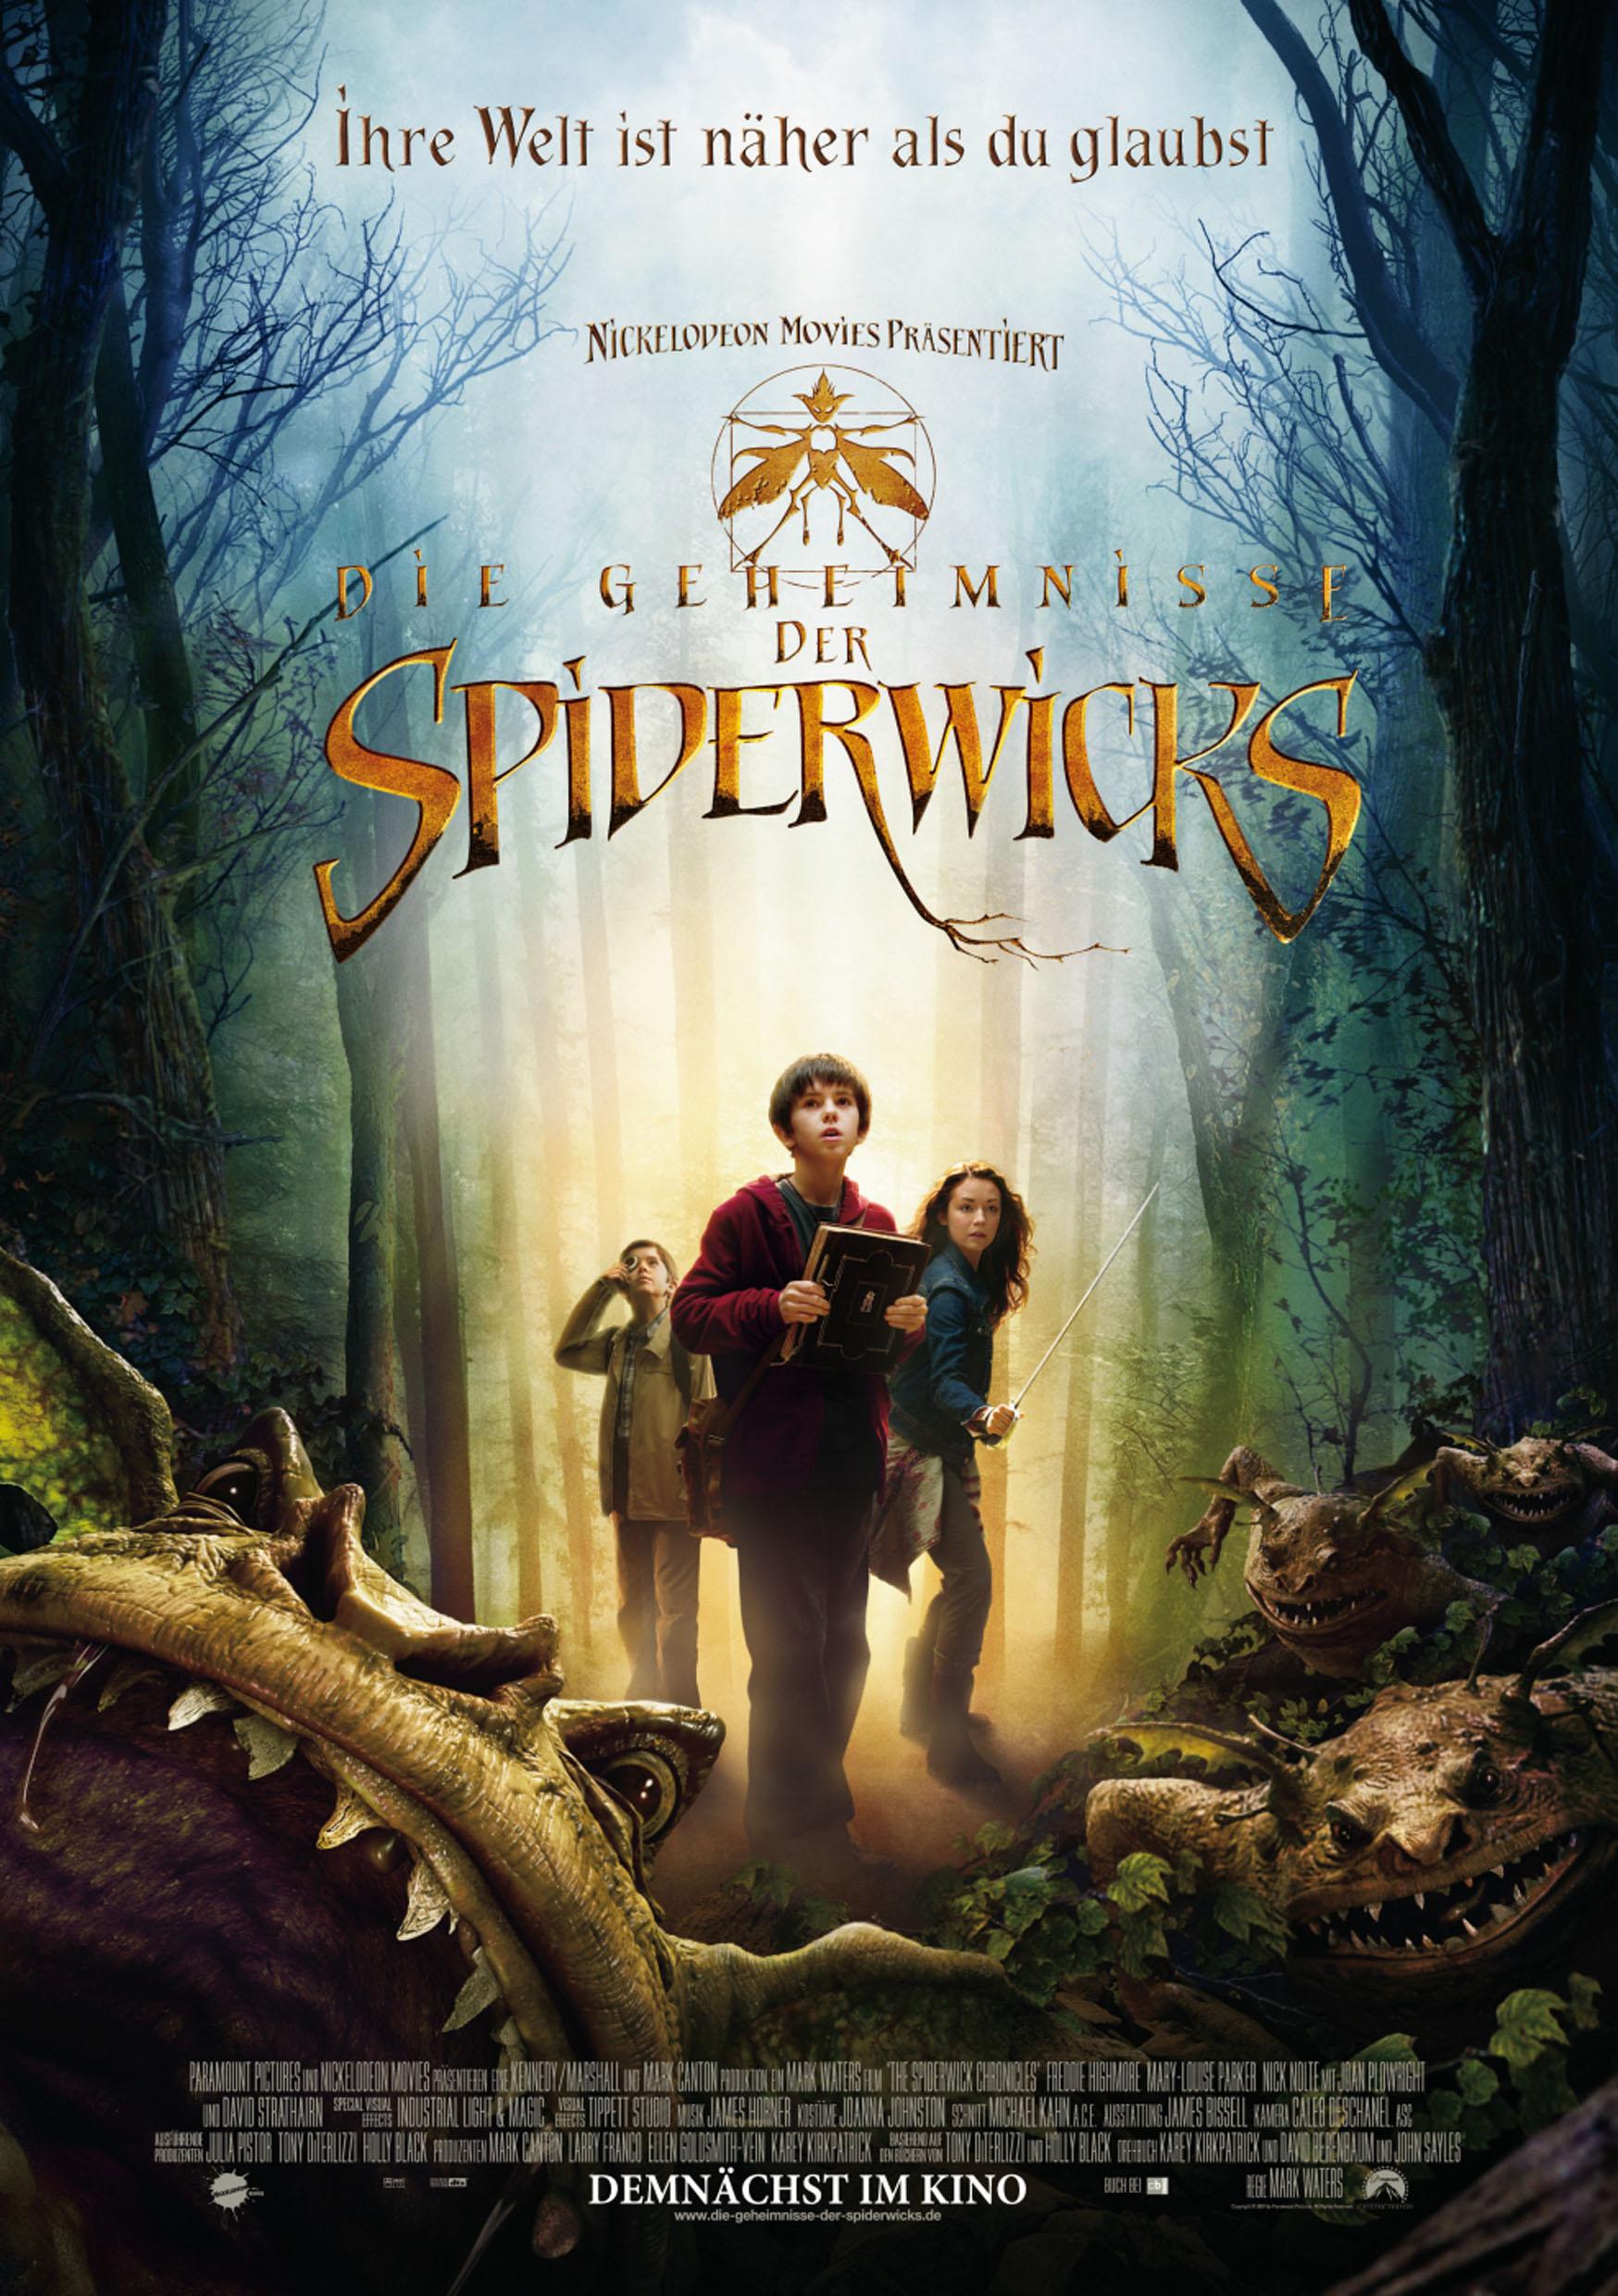 Die Geheimnisse der Spiderwicks (2007) im Kino: Trailer, Kritik ...